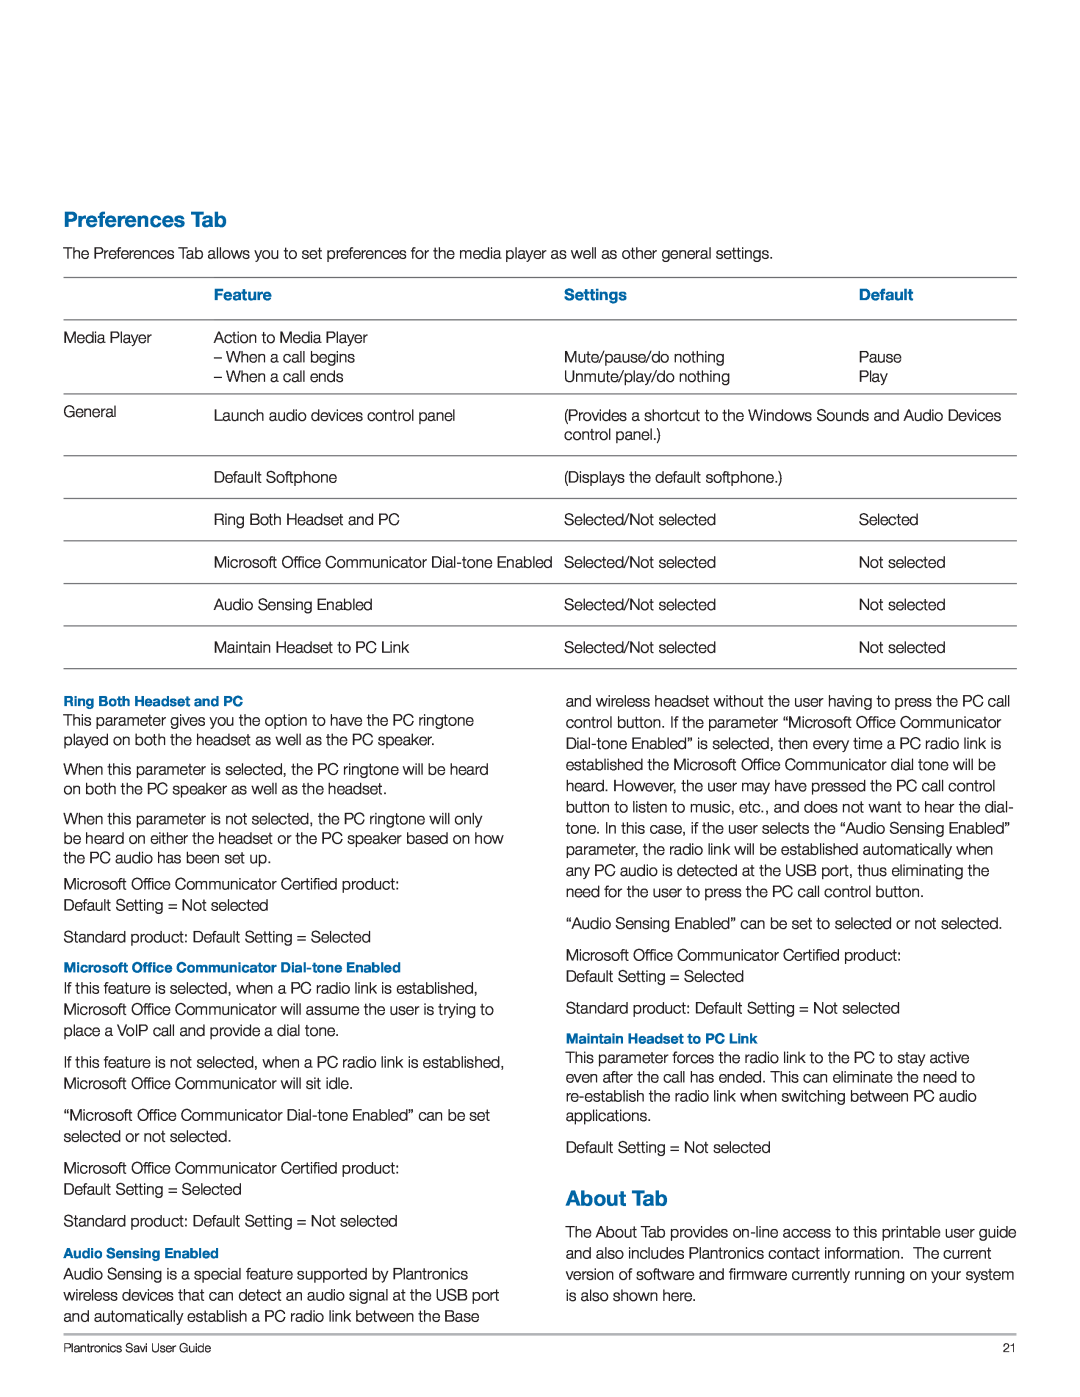 Plantronics WO200 manual Preferences Tab, About Tab 